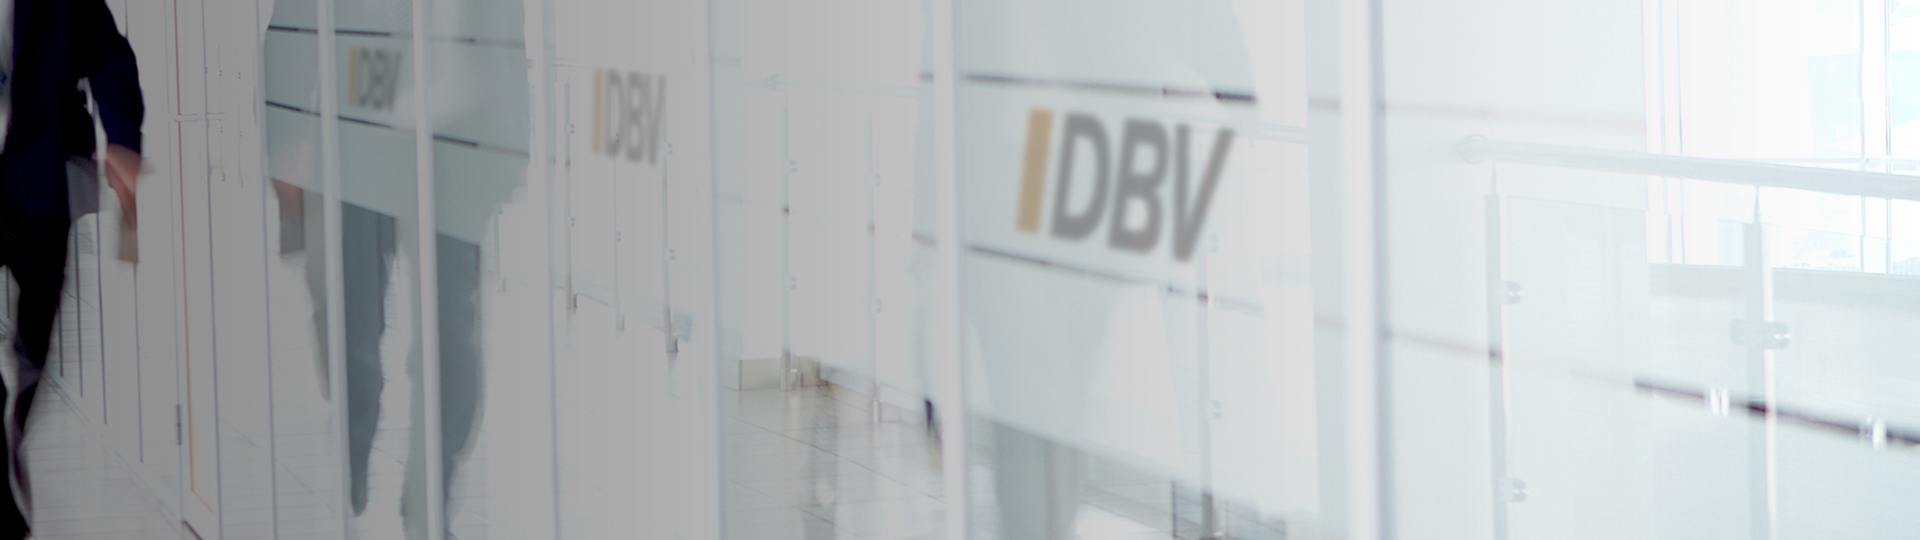 Wichtige Versicherungen | DBV Hannover Hornig & Knoch oHG 